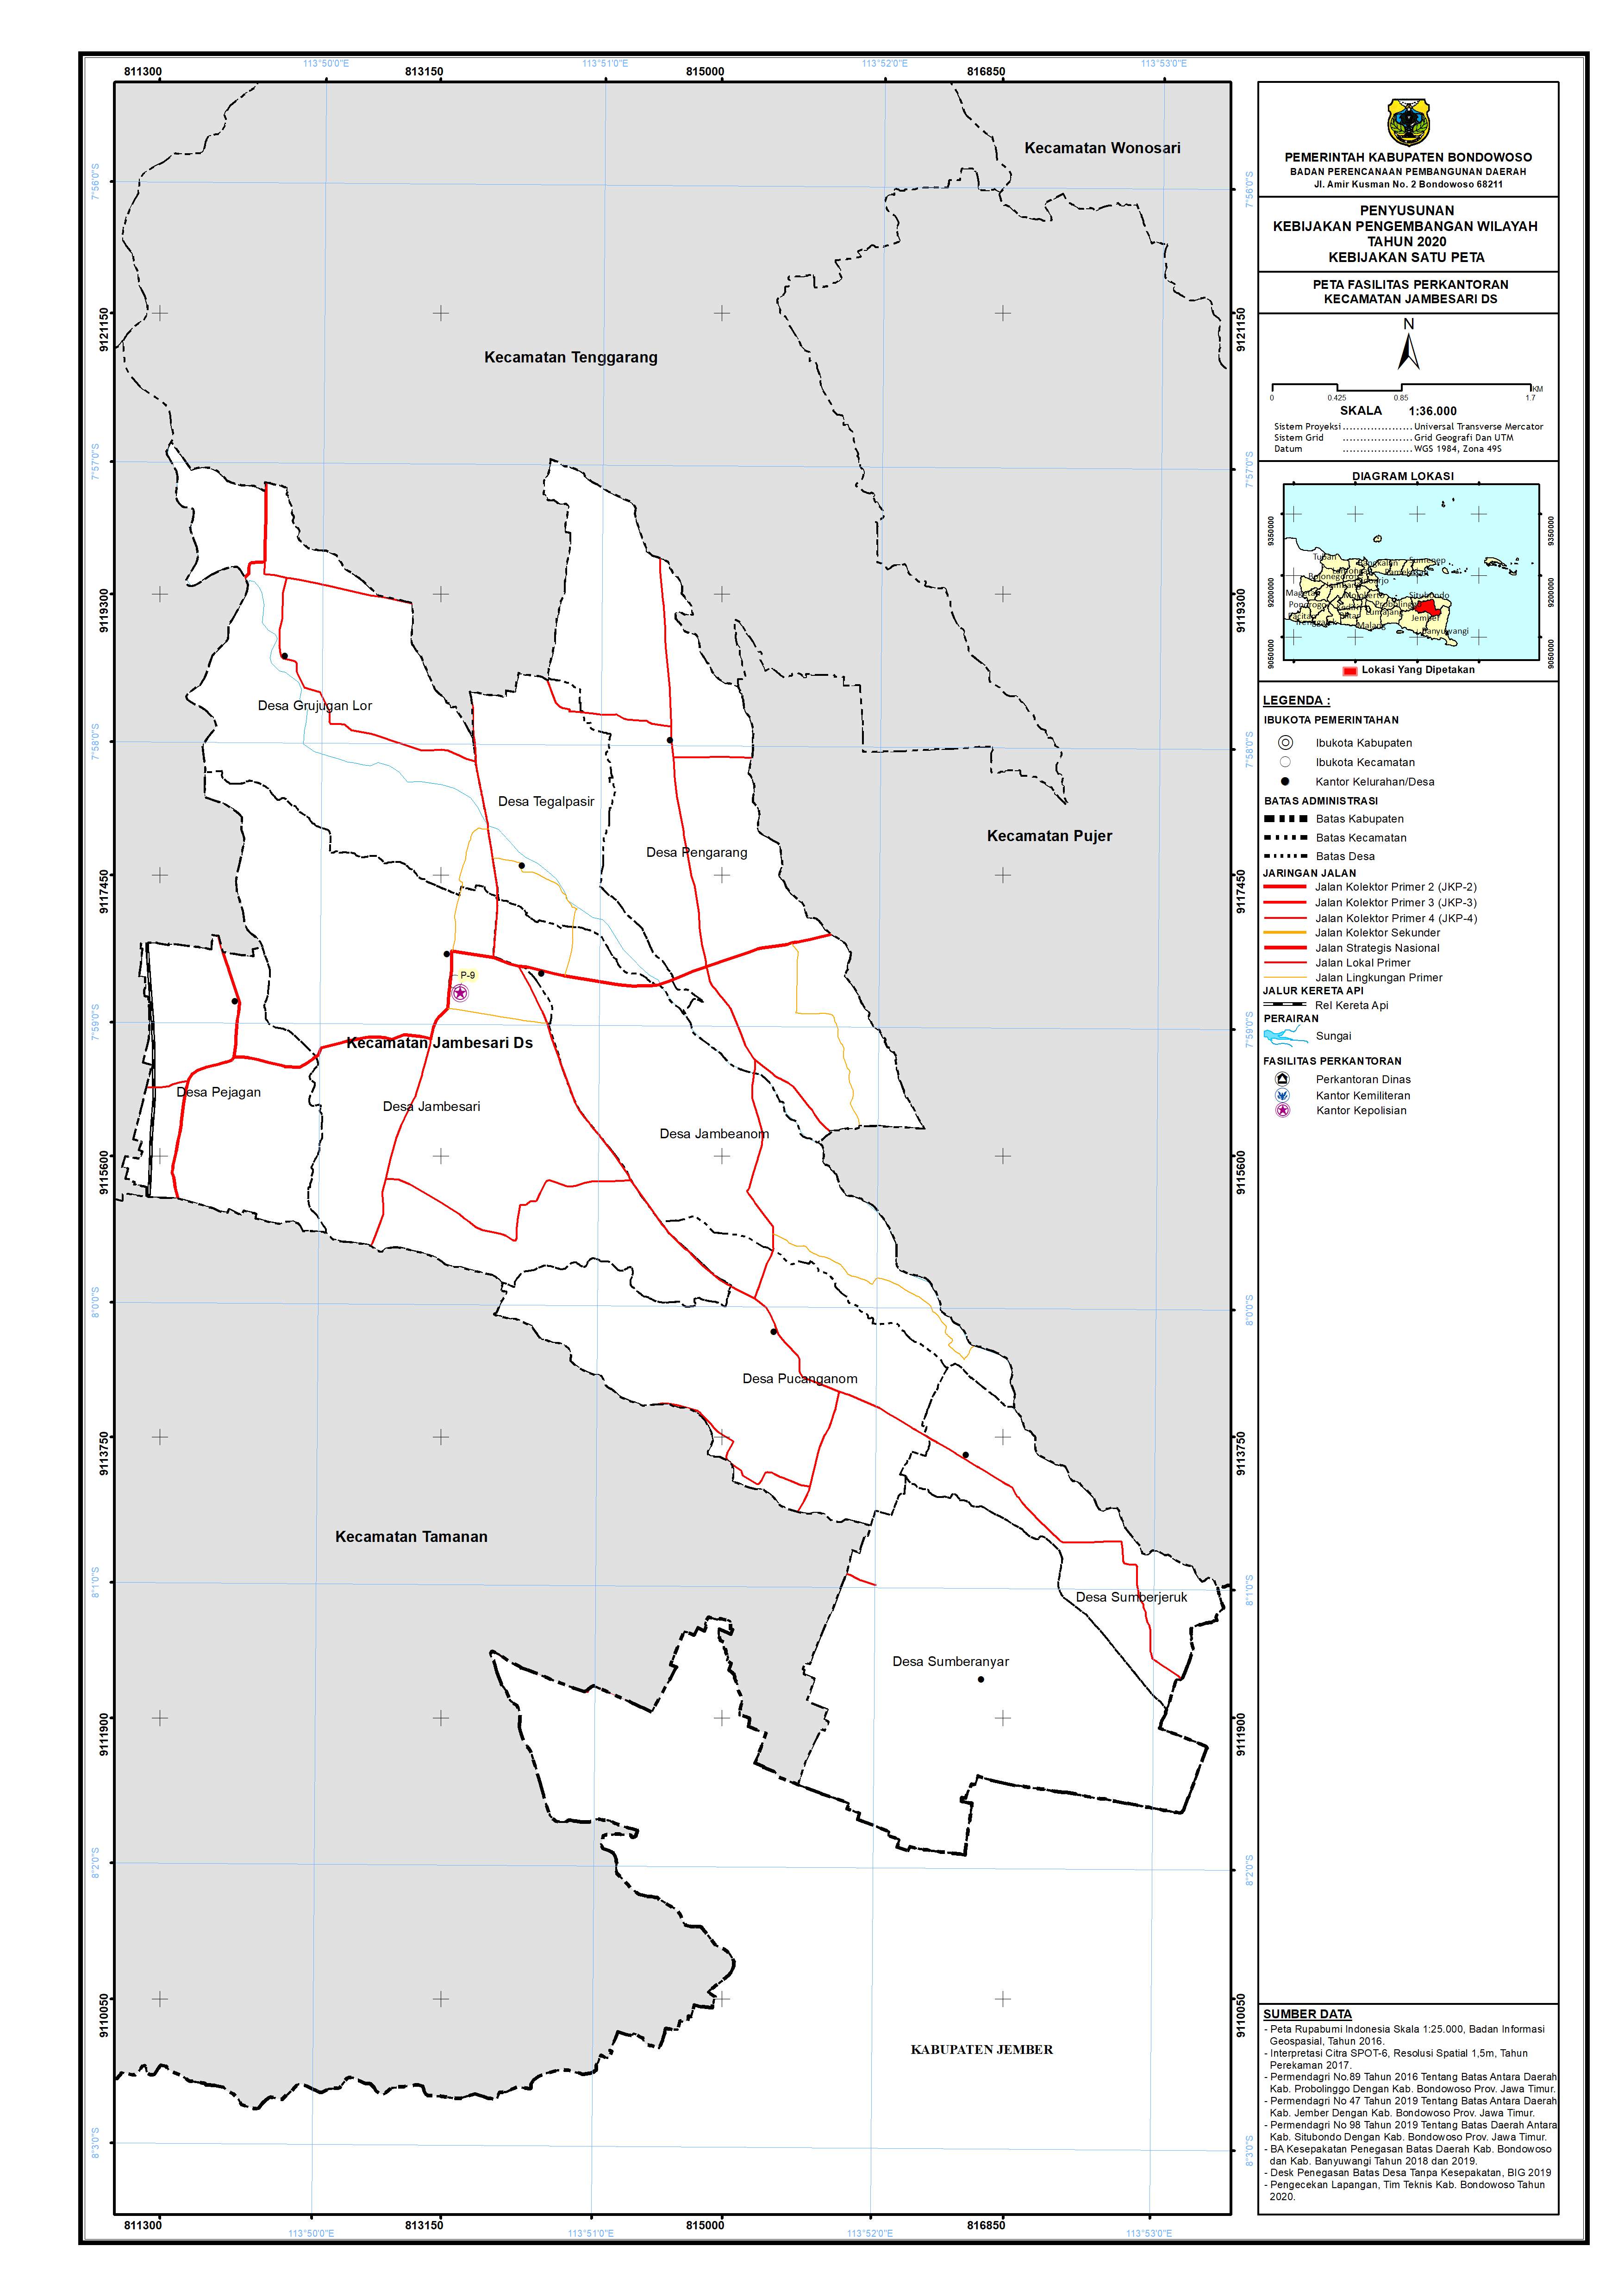 Peta Persebaran Perkantoran Kecamatan Jambesari DS.png